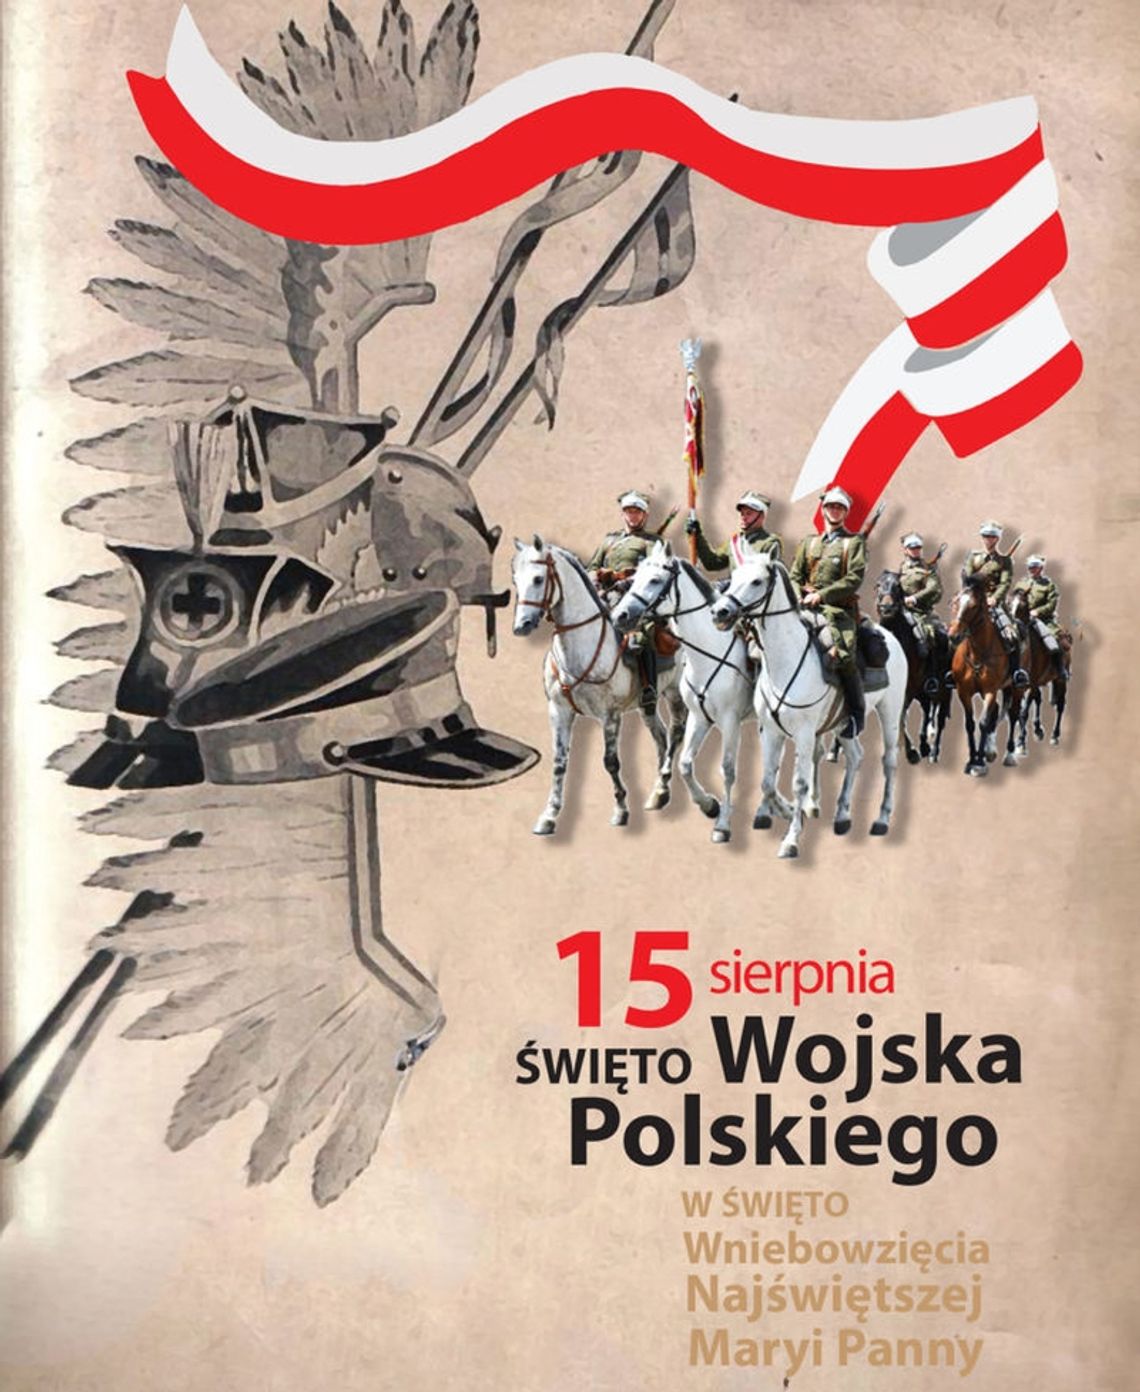 Święto Wojska Polskiego - sprawdź program uroczystości!